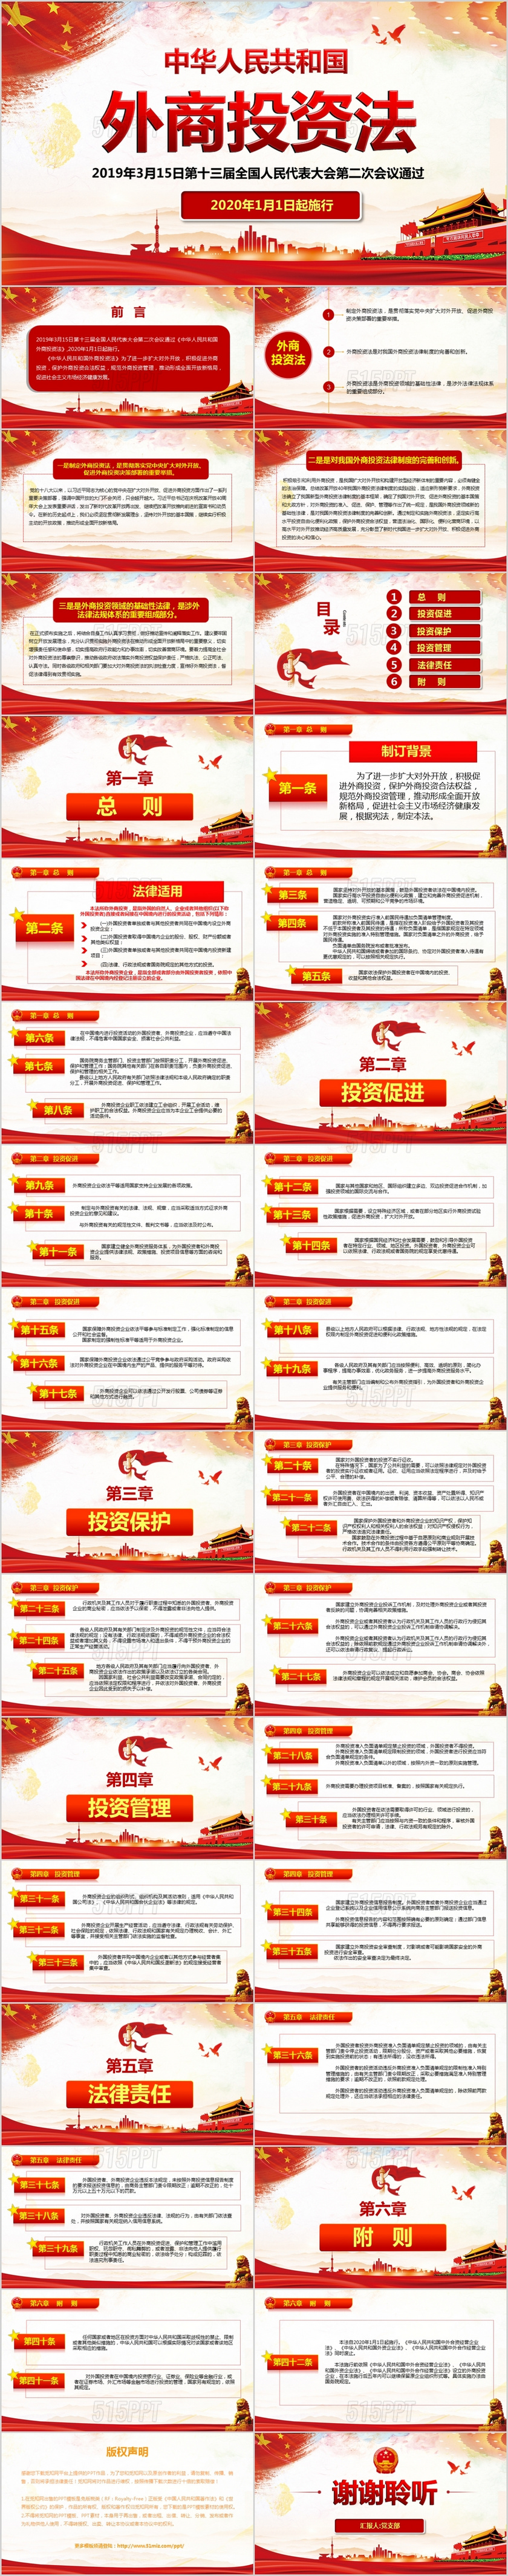 中华人民共和国外商投资法学习解读党建党课PPT模板 